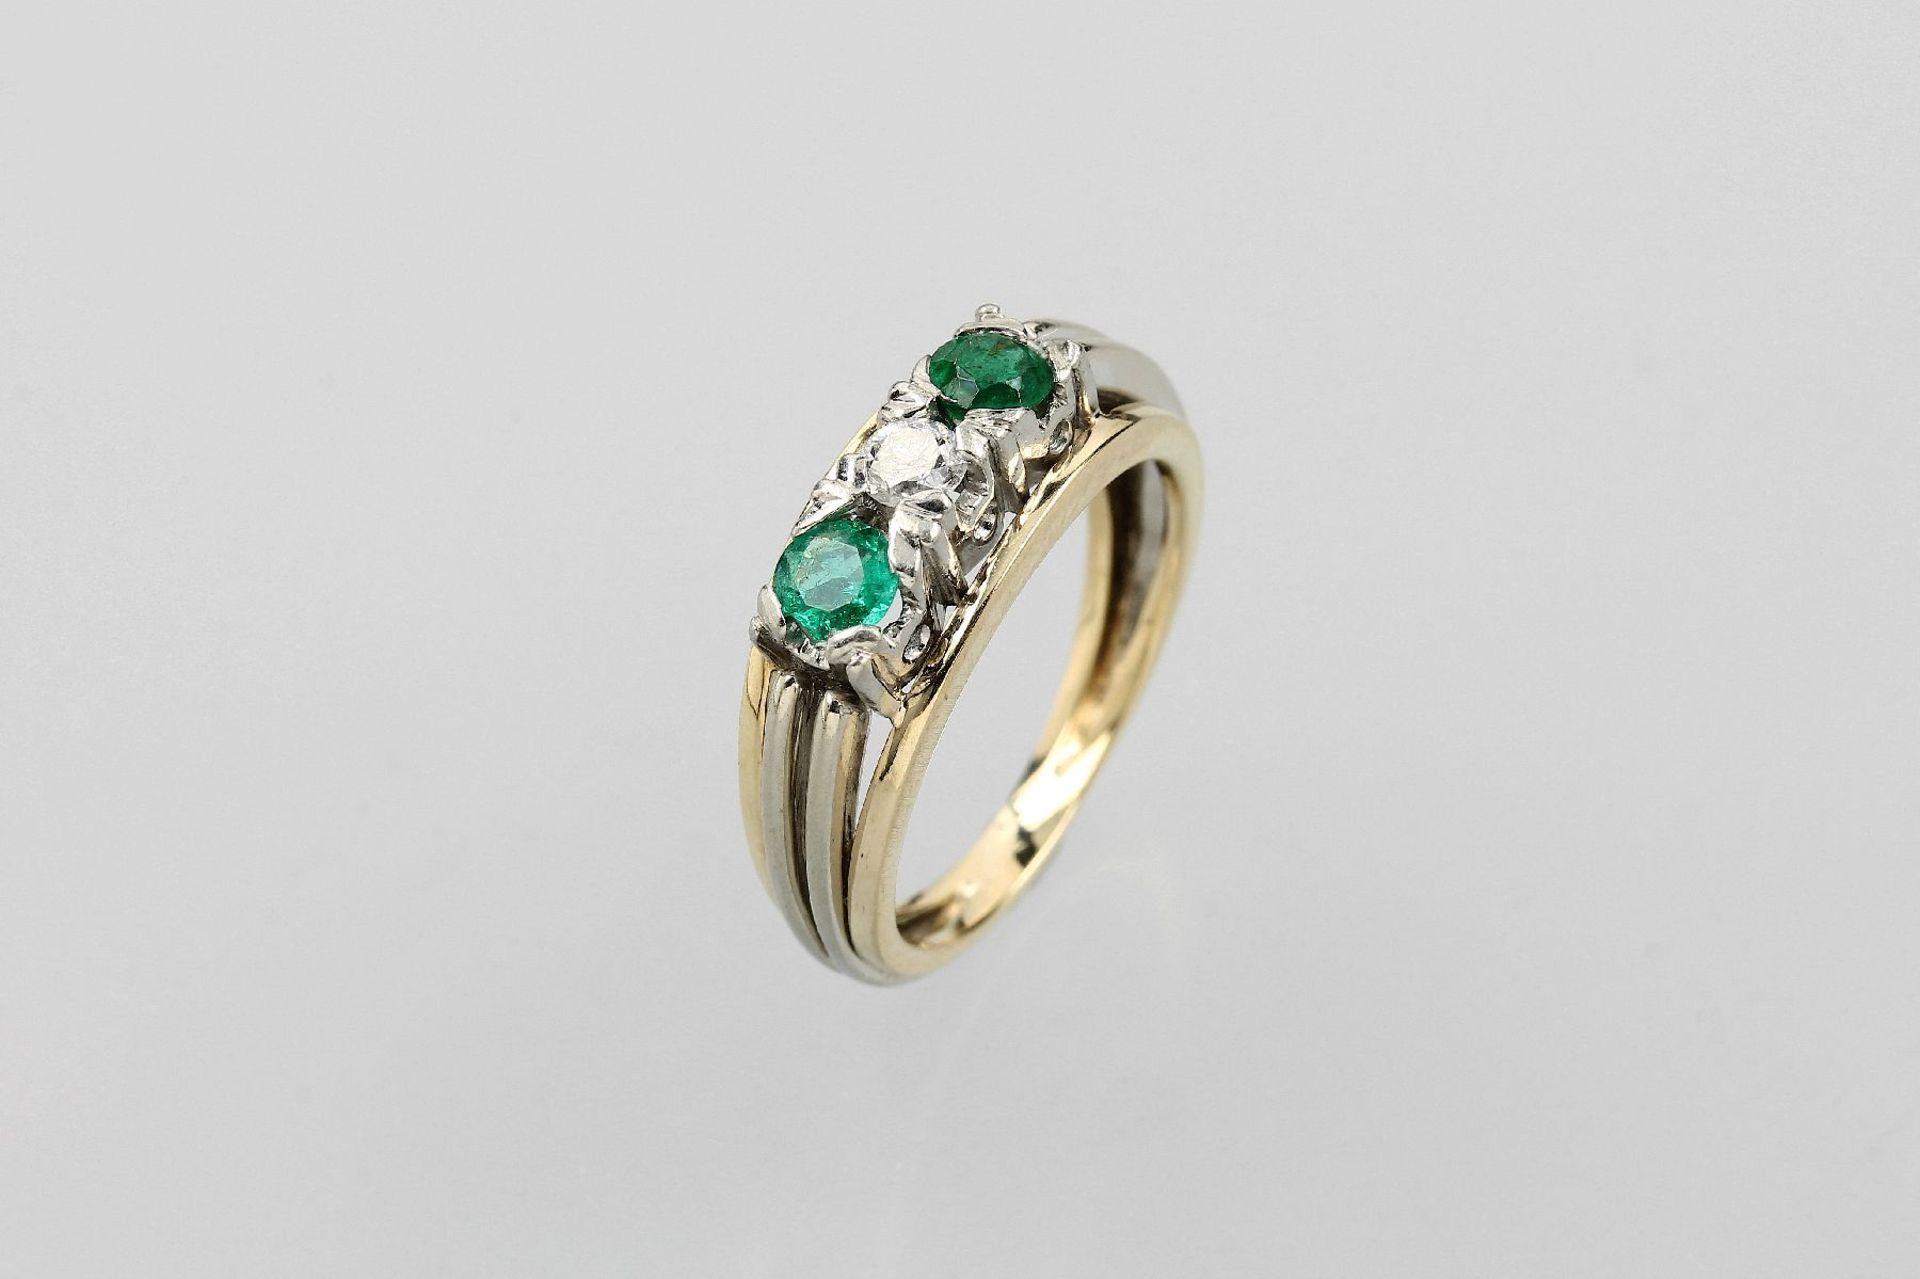 14 kt Gold Ring mit Brillant und Smaragden, GG 585/000, 2 rundfacett. Smaragde zus. ca. 0.44 ct (